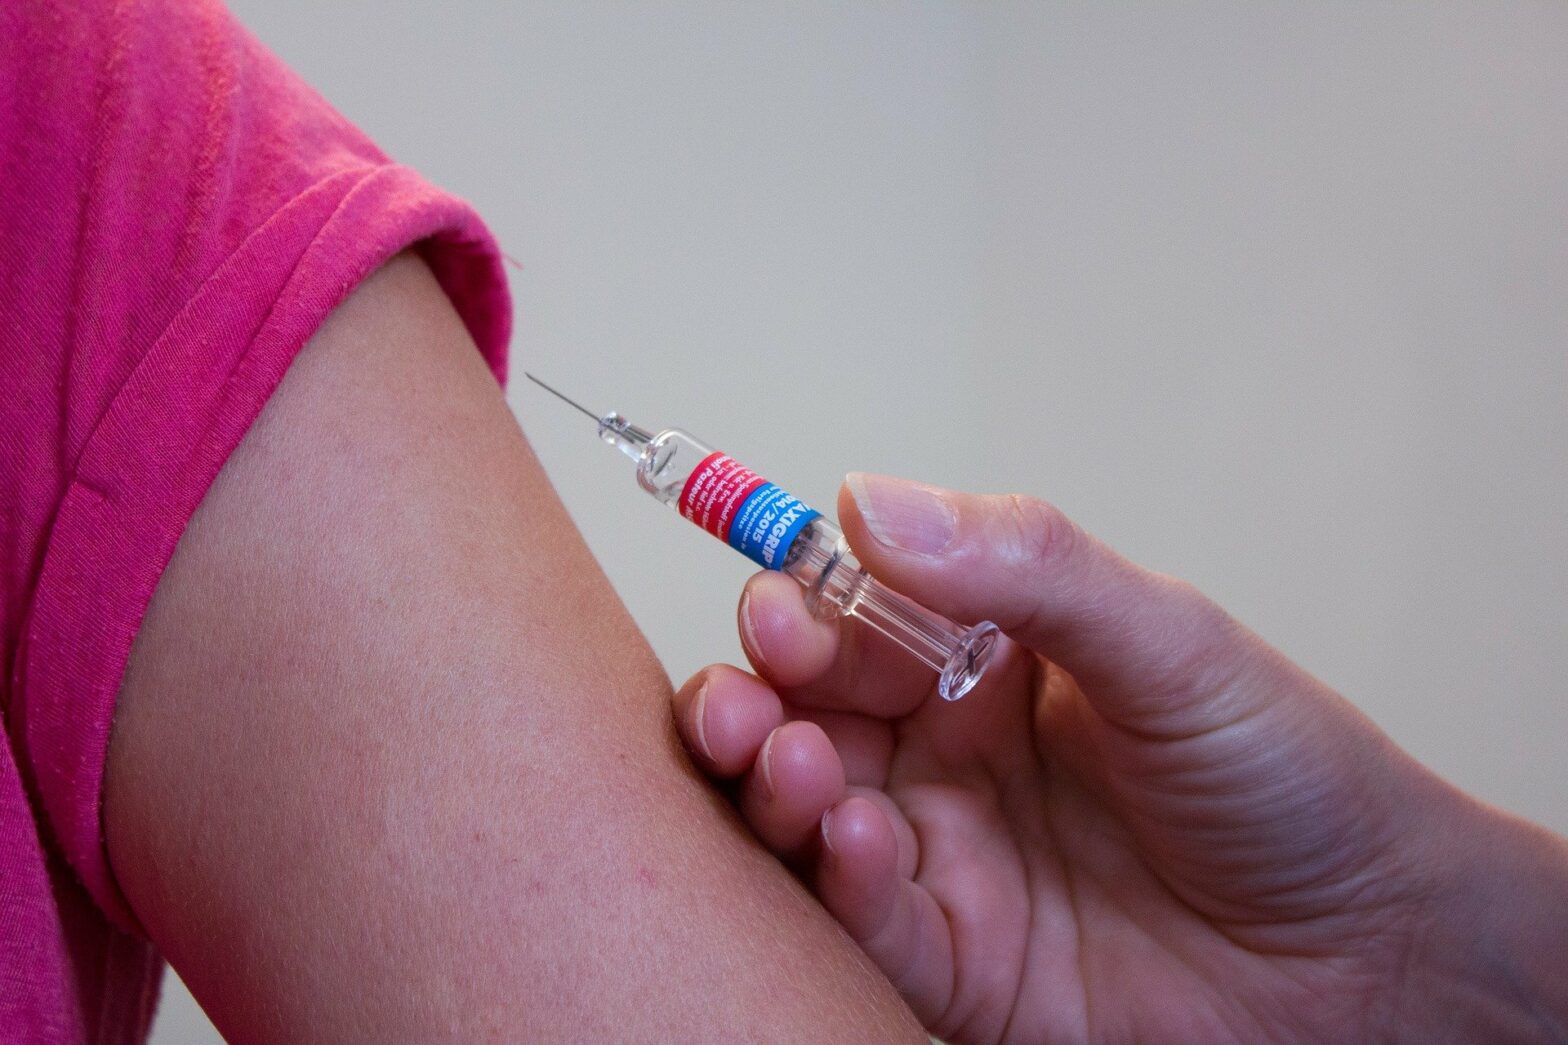 Impfung im Oberarm